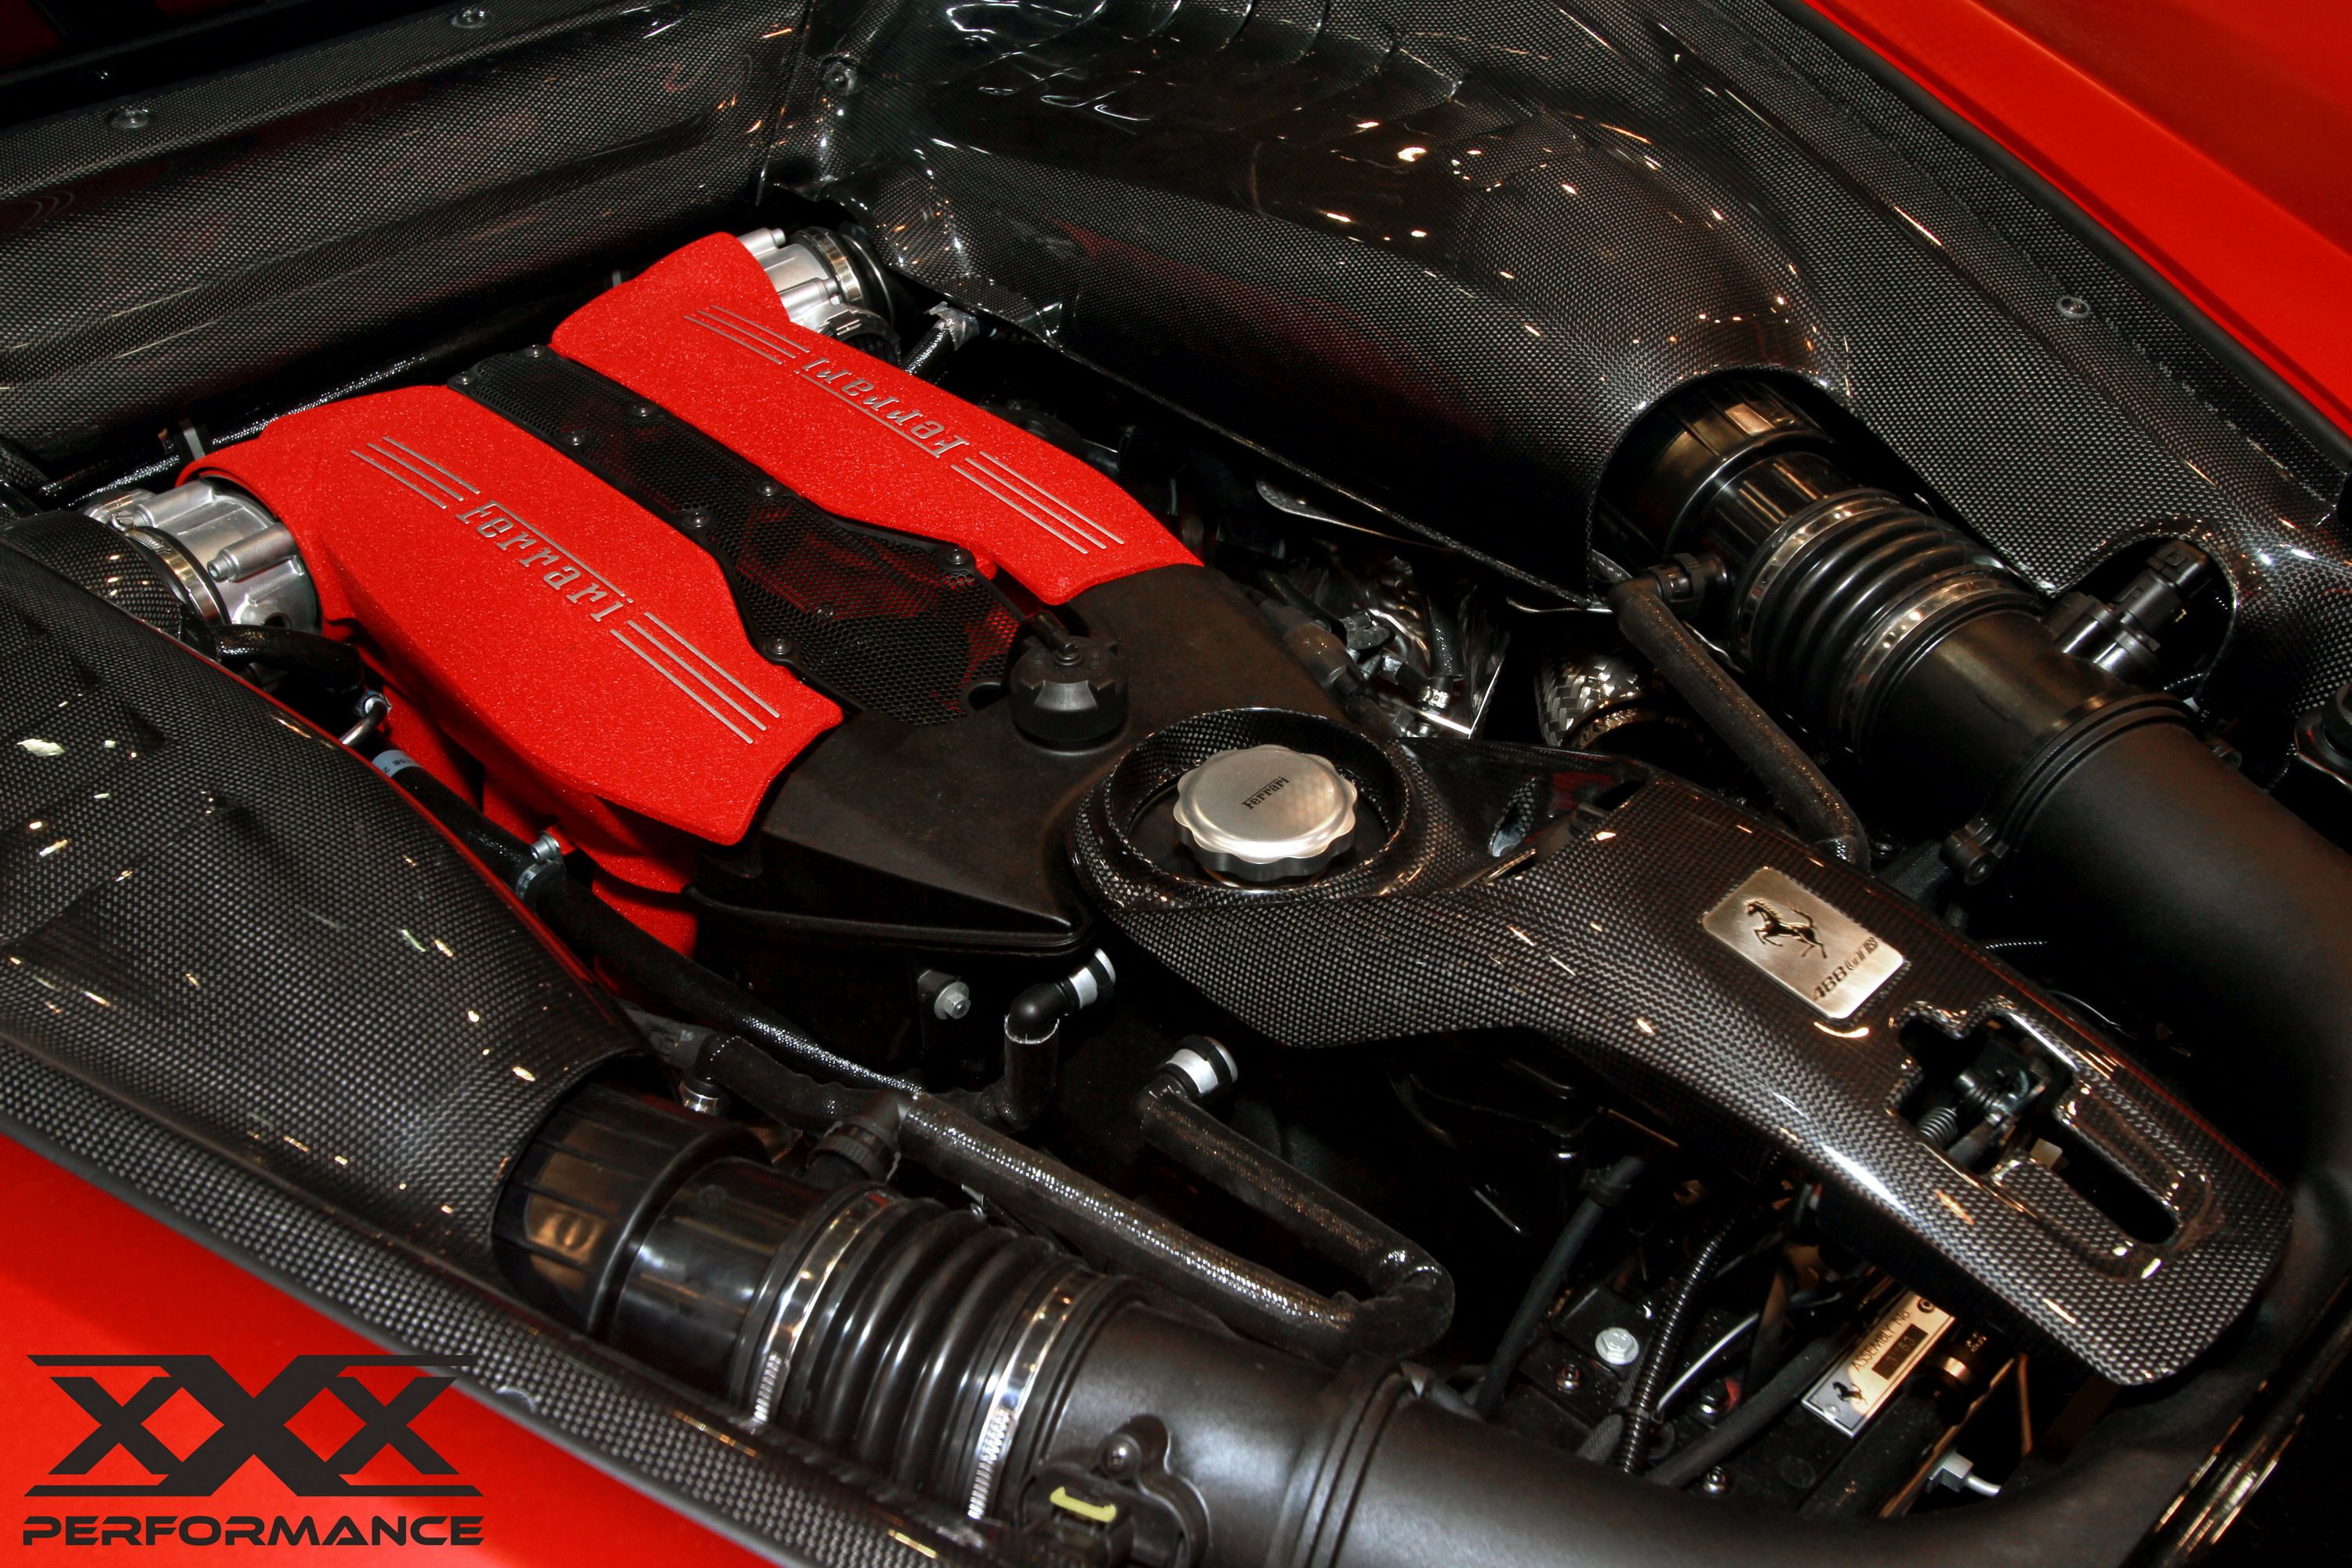 2016 Ferrari 488 GTB By xXx Performance